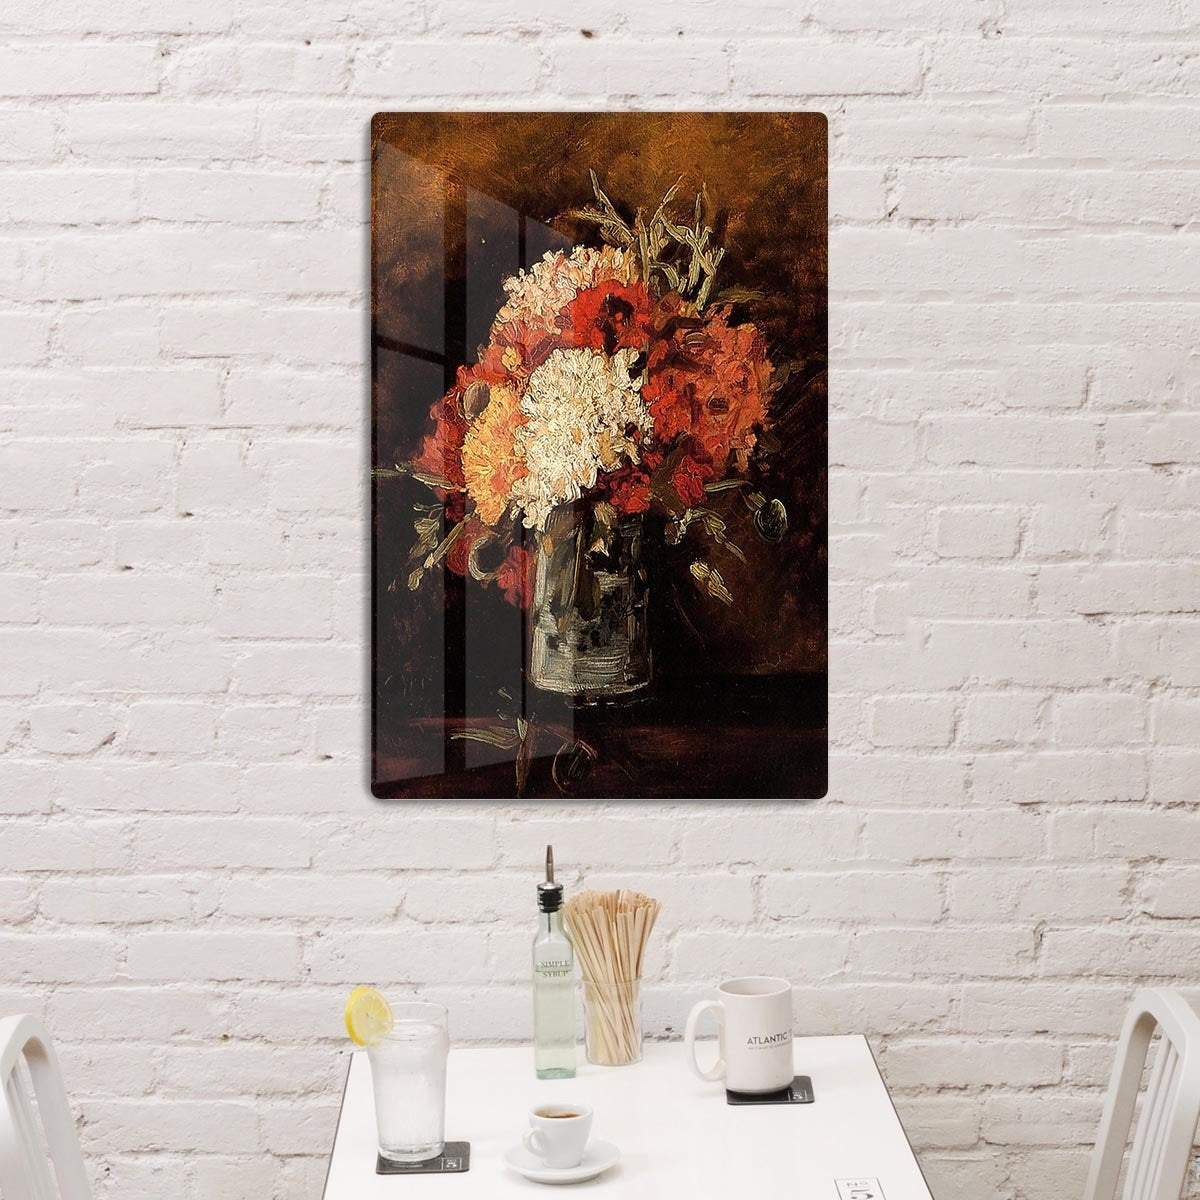 Vase with Carnations by Van Gogh HD Metal Print